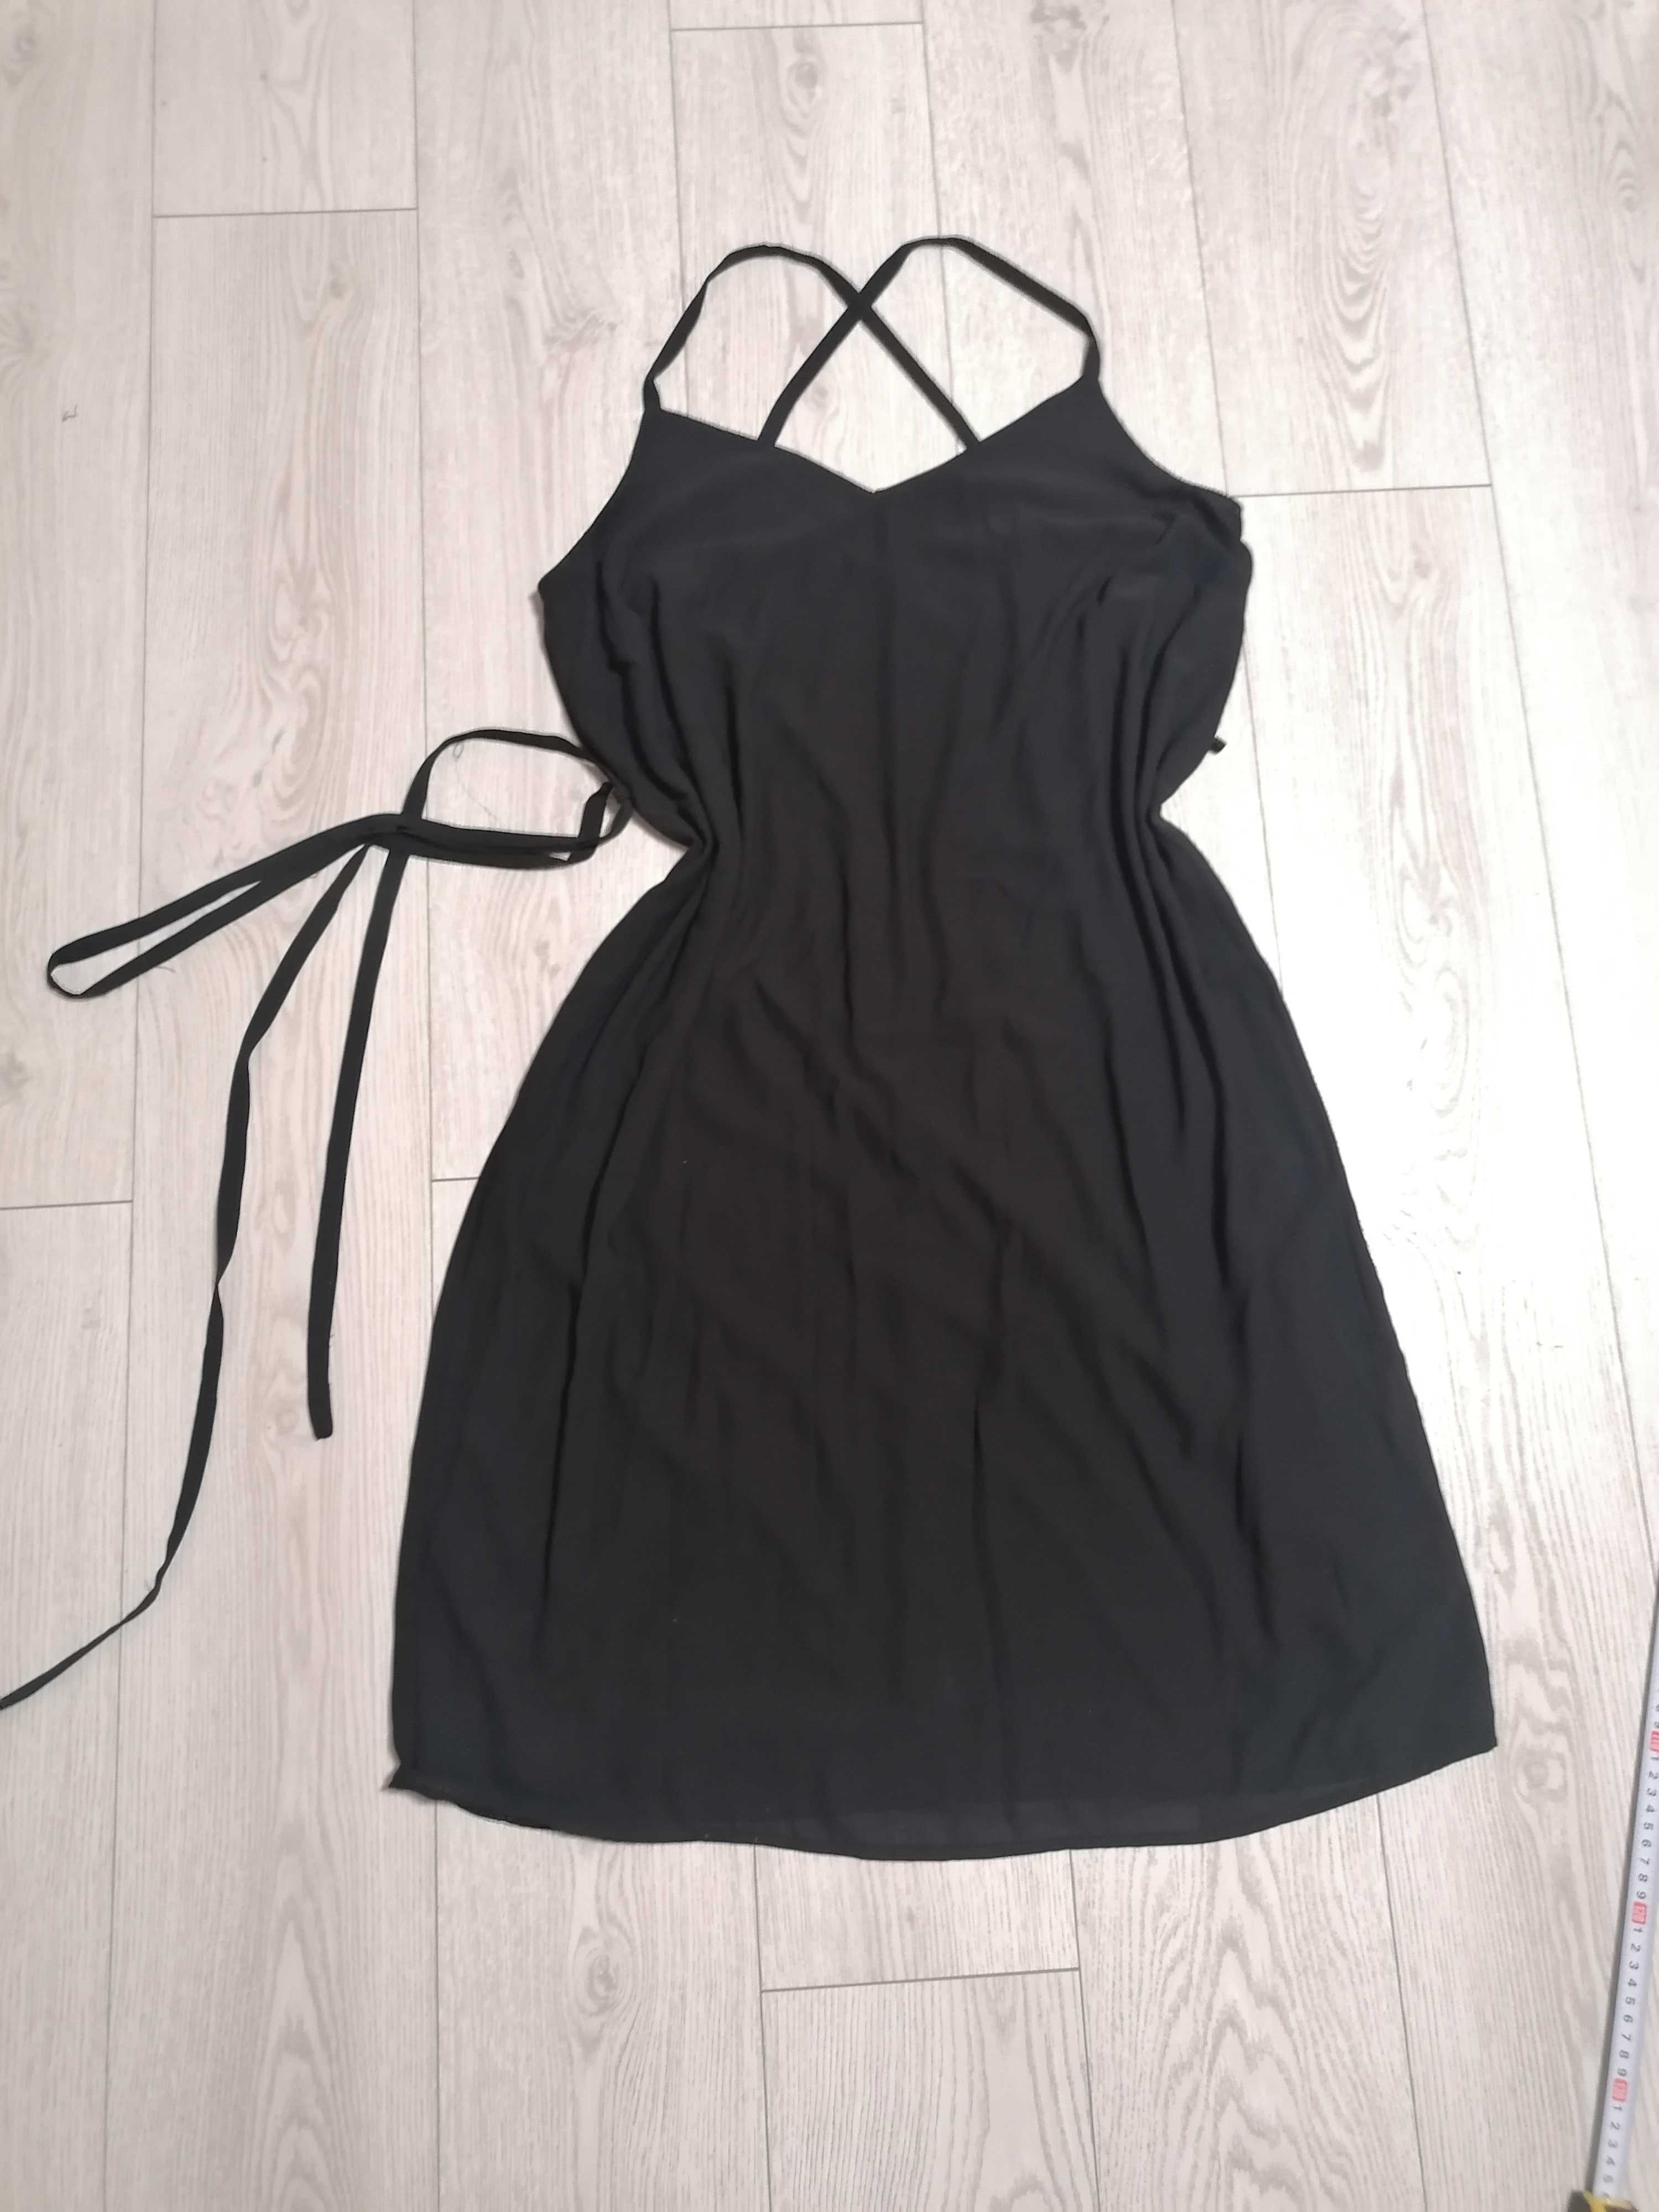 Czarna sukienka okolicznościowa, wizytowa, rozm to XL, new look